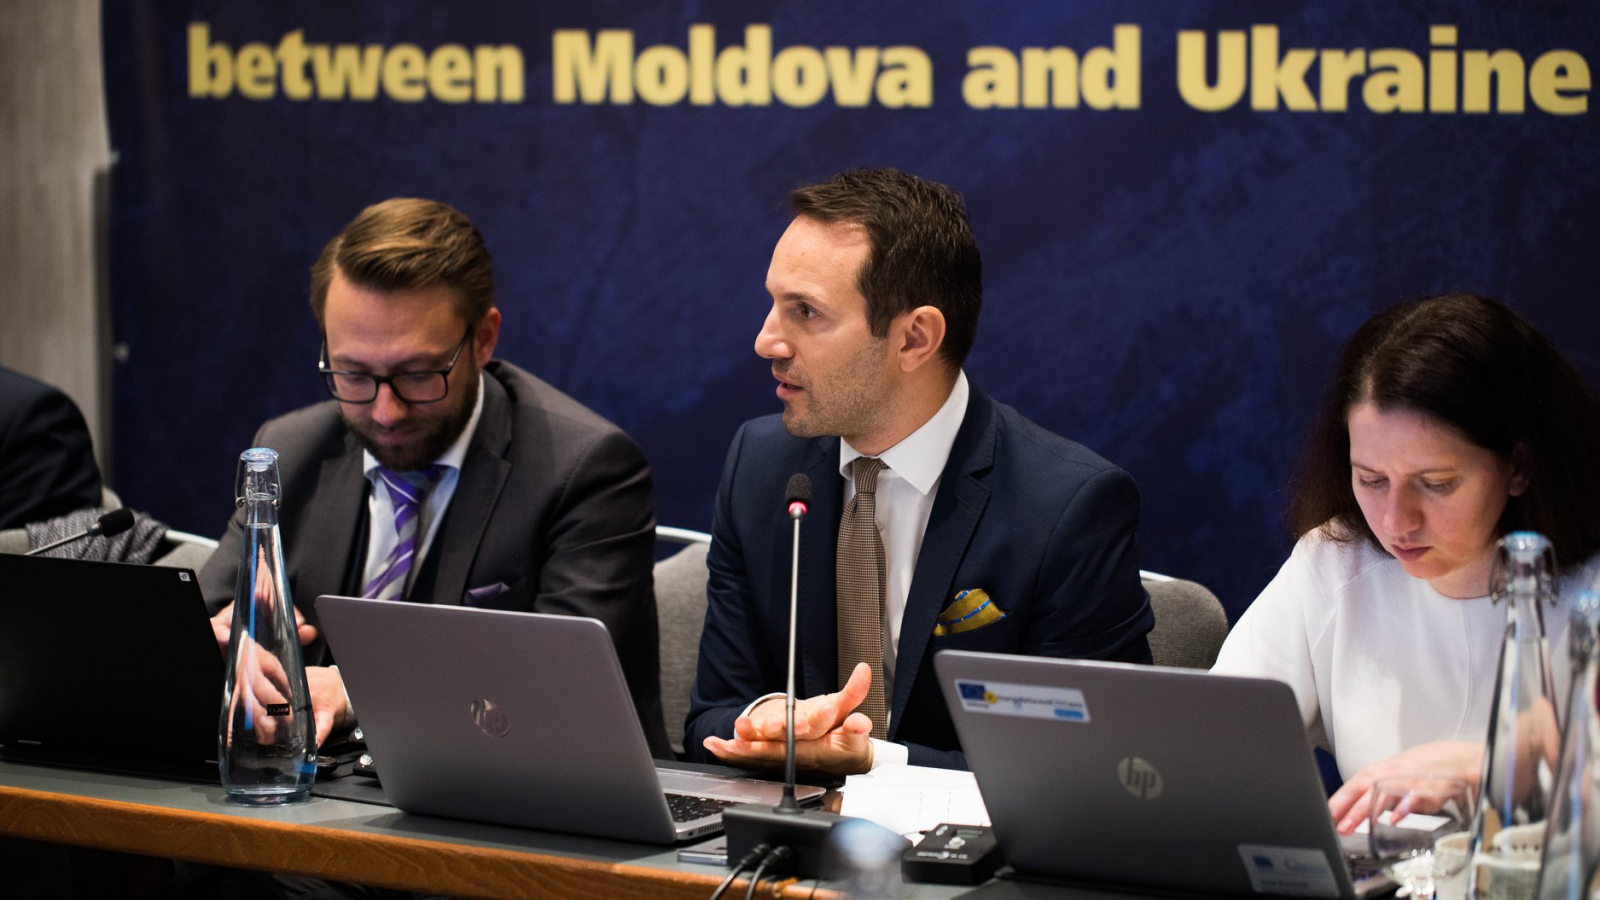 EU4Energy: Improving cross-border energy exchange between Ukraine and Moldova